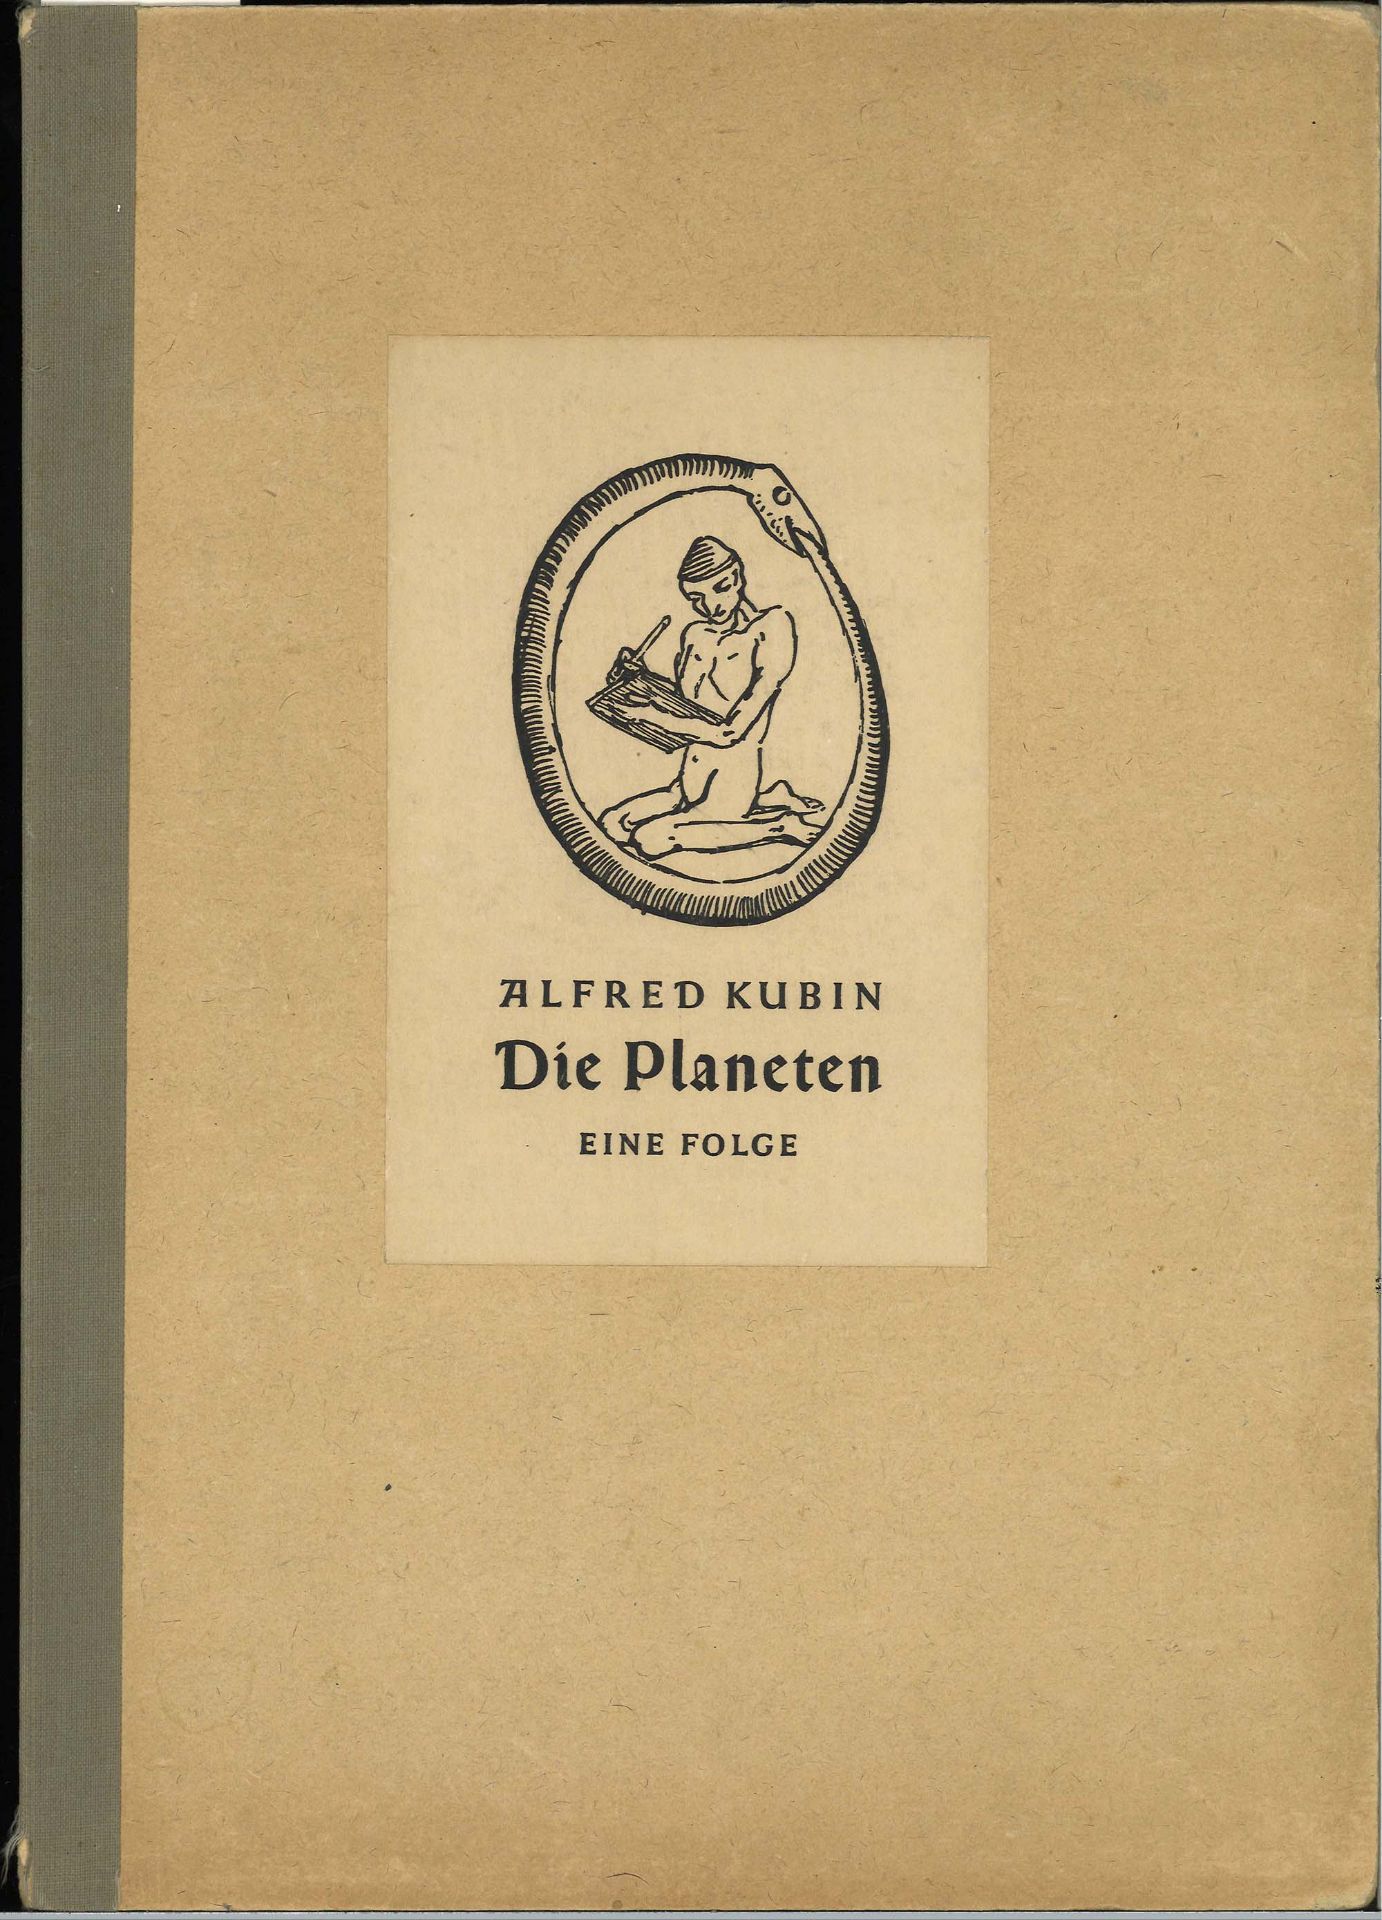 Alfred Kubin, "Die Planeten" Eine Folge